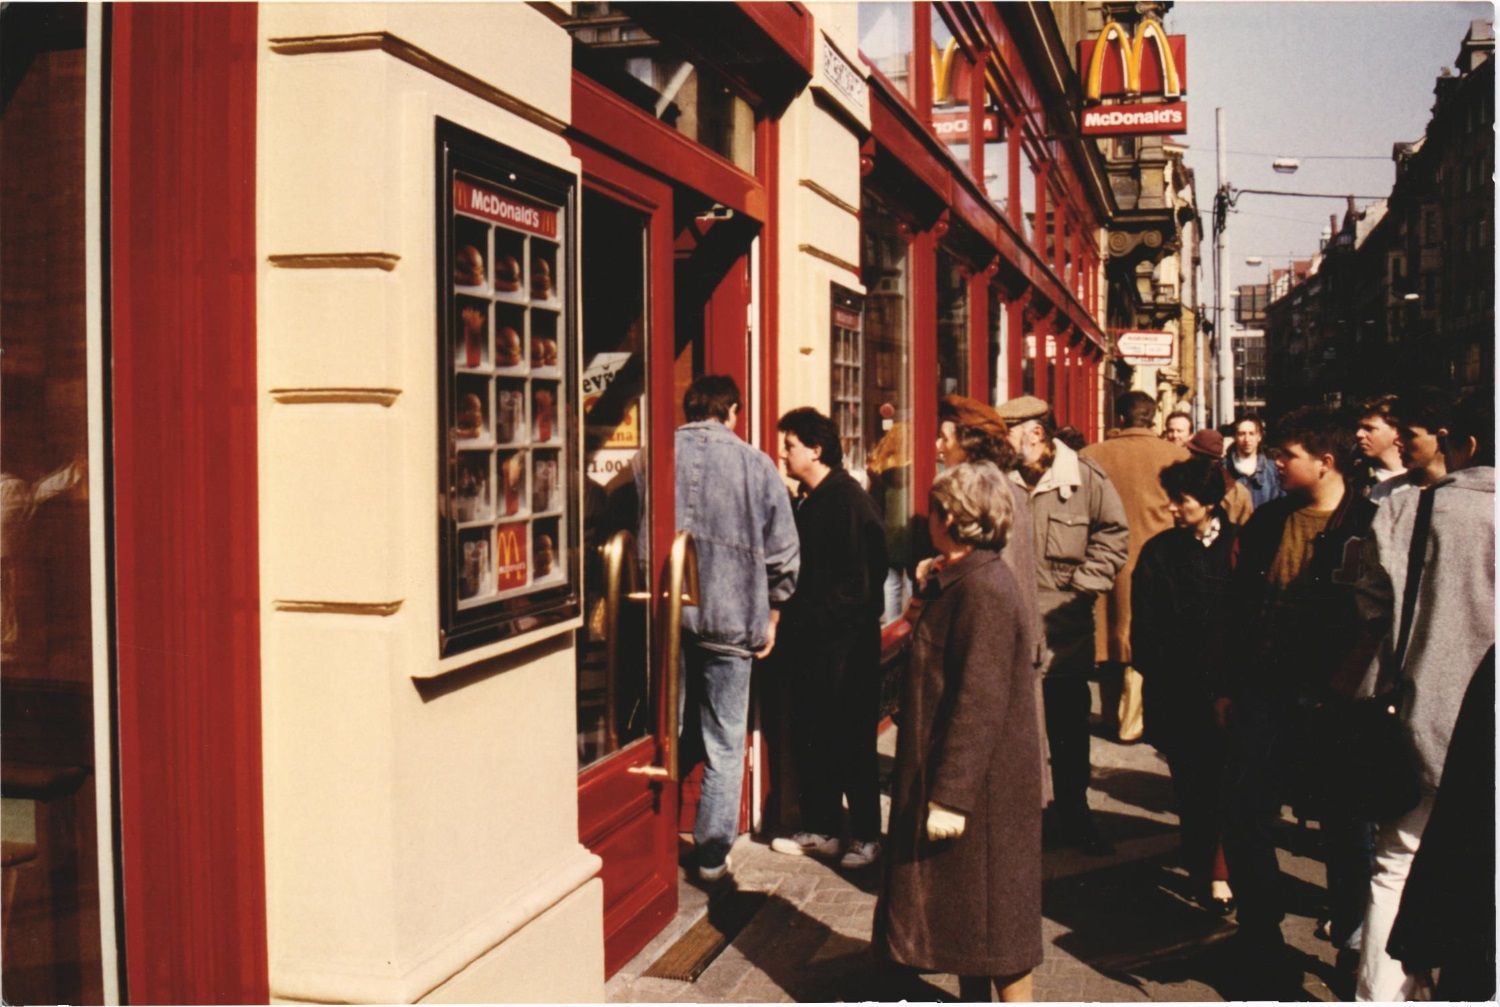 McDonald’ 25 let v ČR - historické snímky